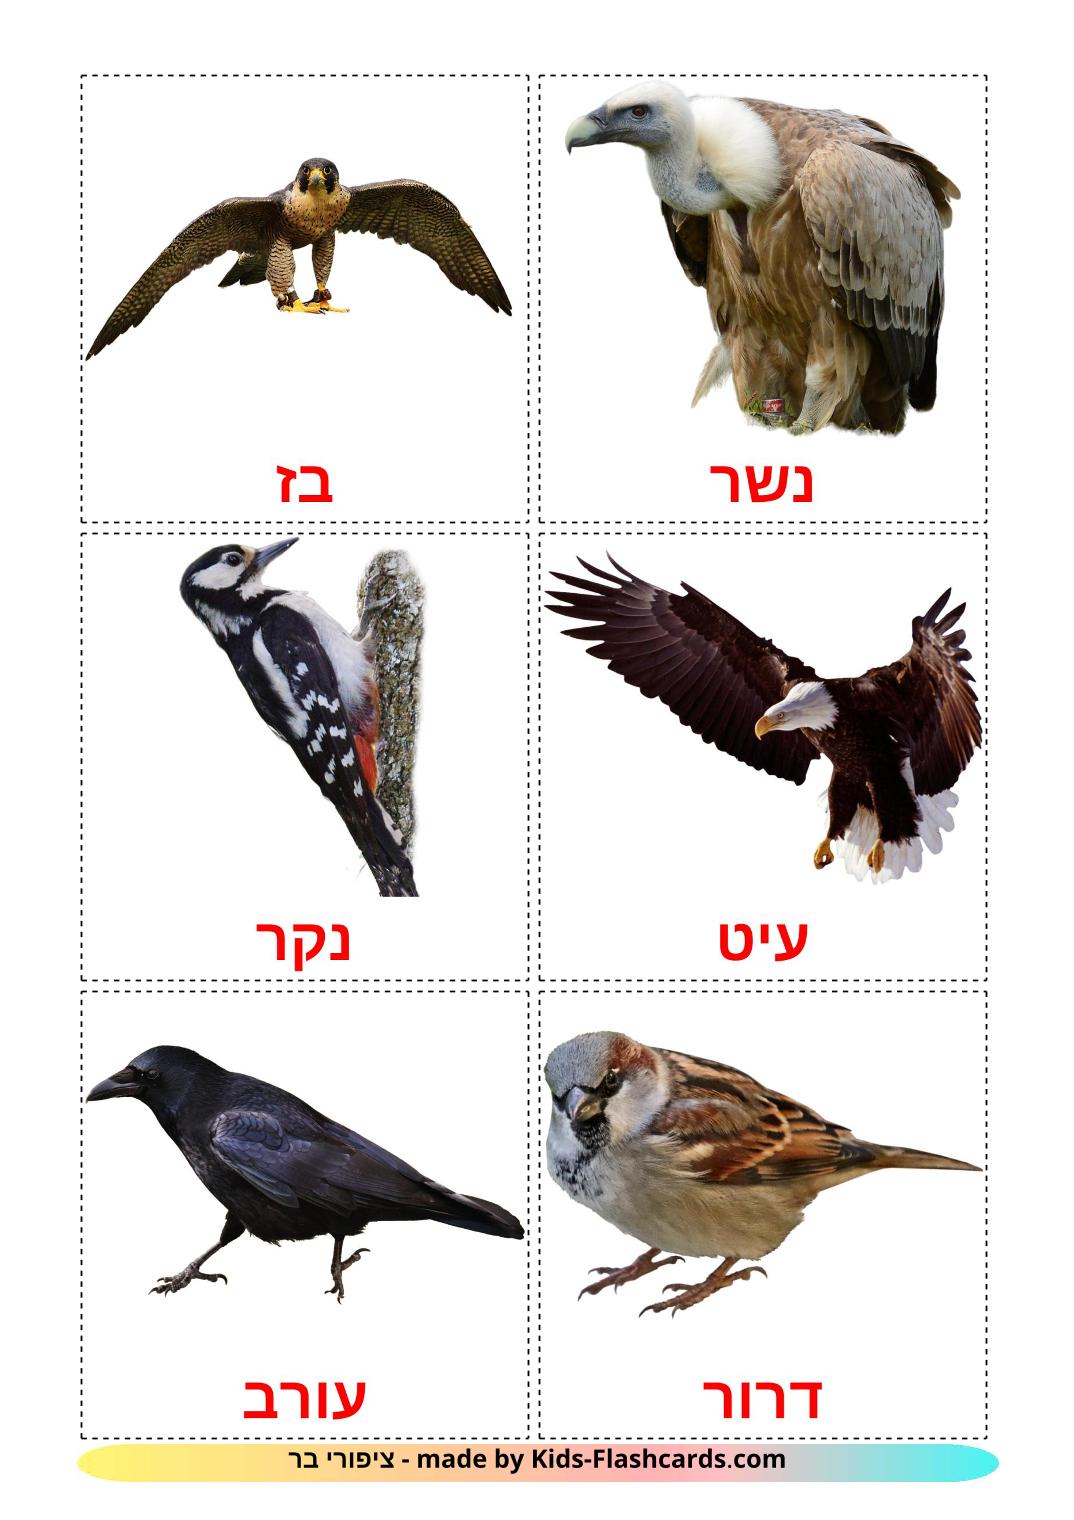 Pájaros salvajes - 18 fichas de hebreo para imprimir gratis 